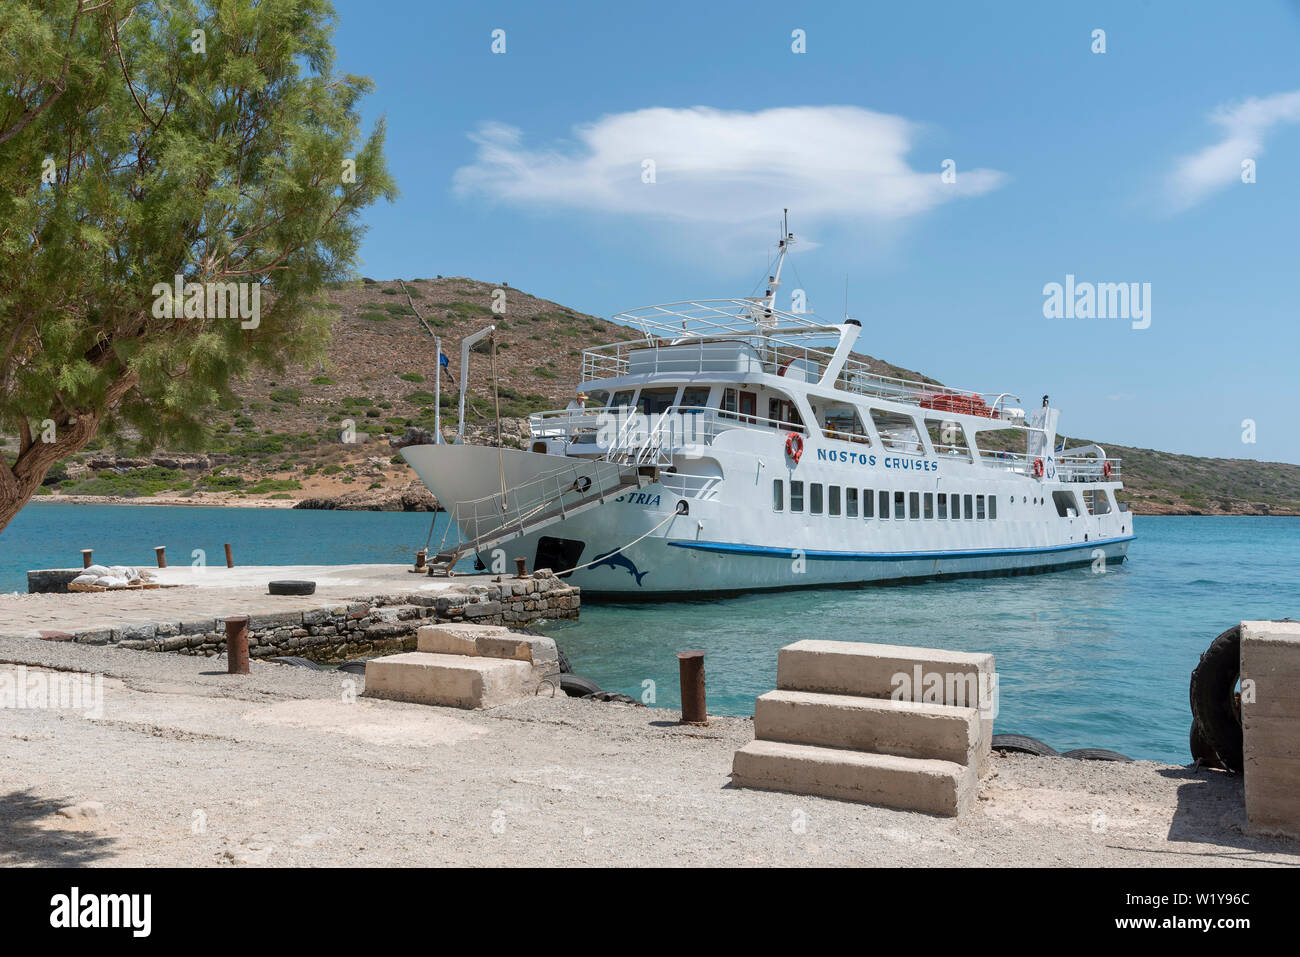 L'île de Spinalonga, la Crète, Grèce. Juin 2019. De traversier de passagers transportant des touristes d'Agios Nikolaos à l'île de Spinalonga une ancienne léproserie. Banque D'Images